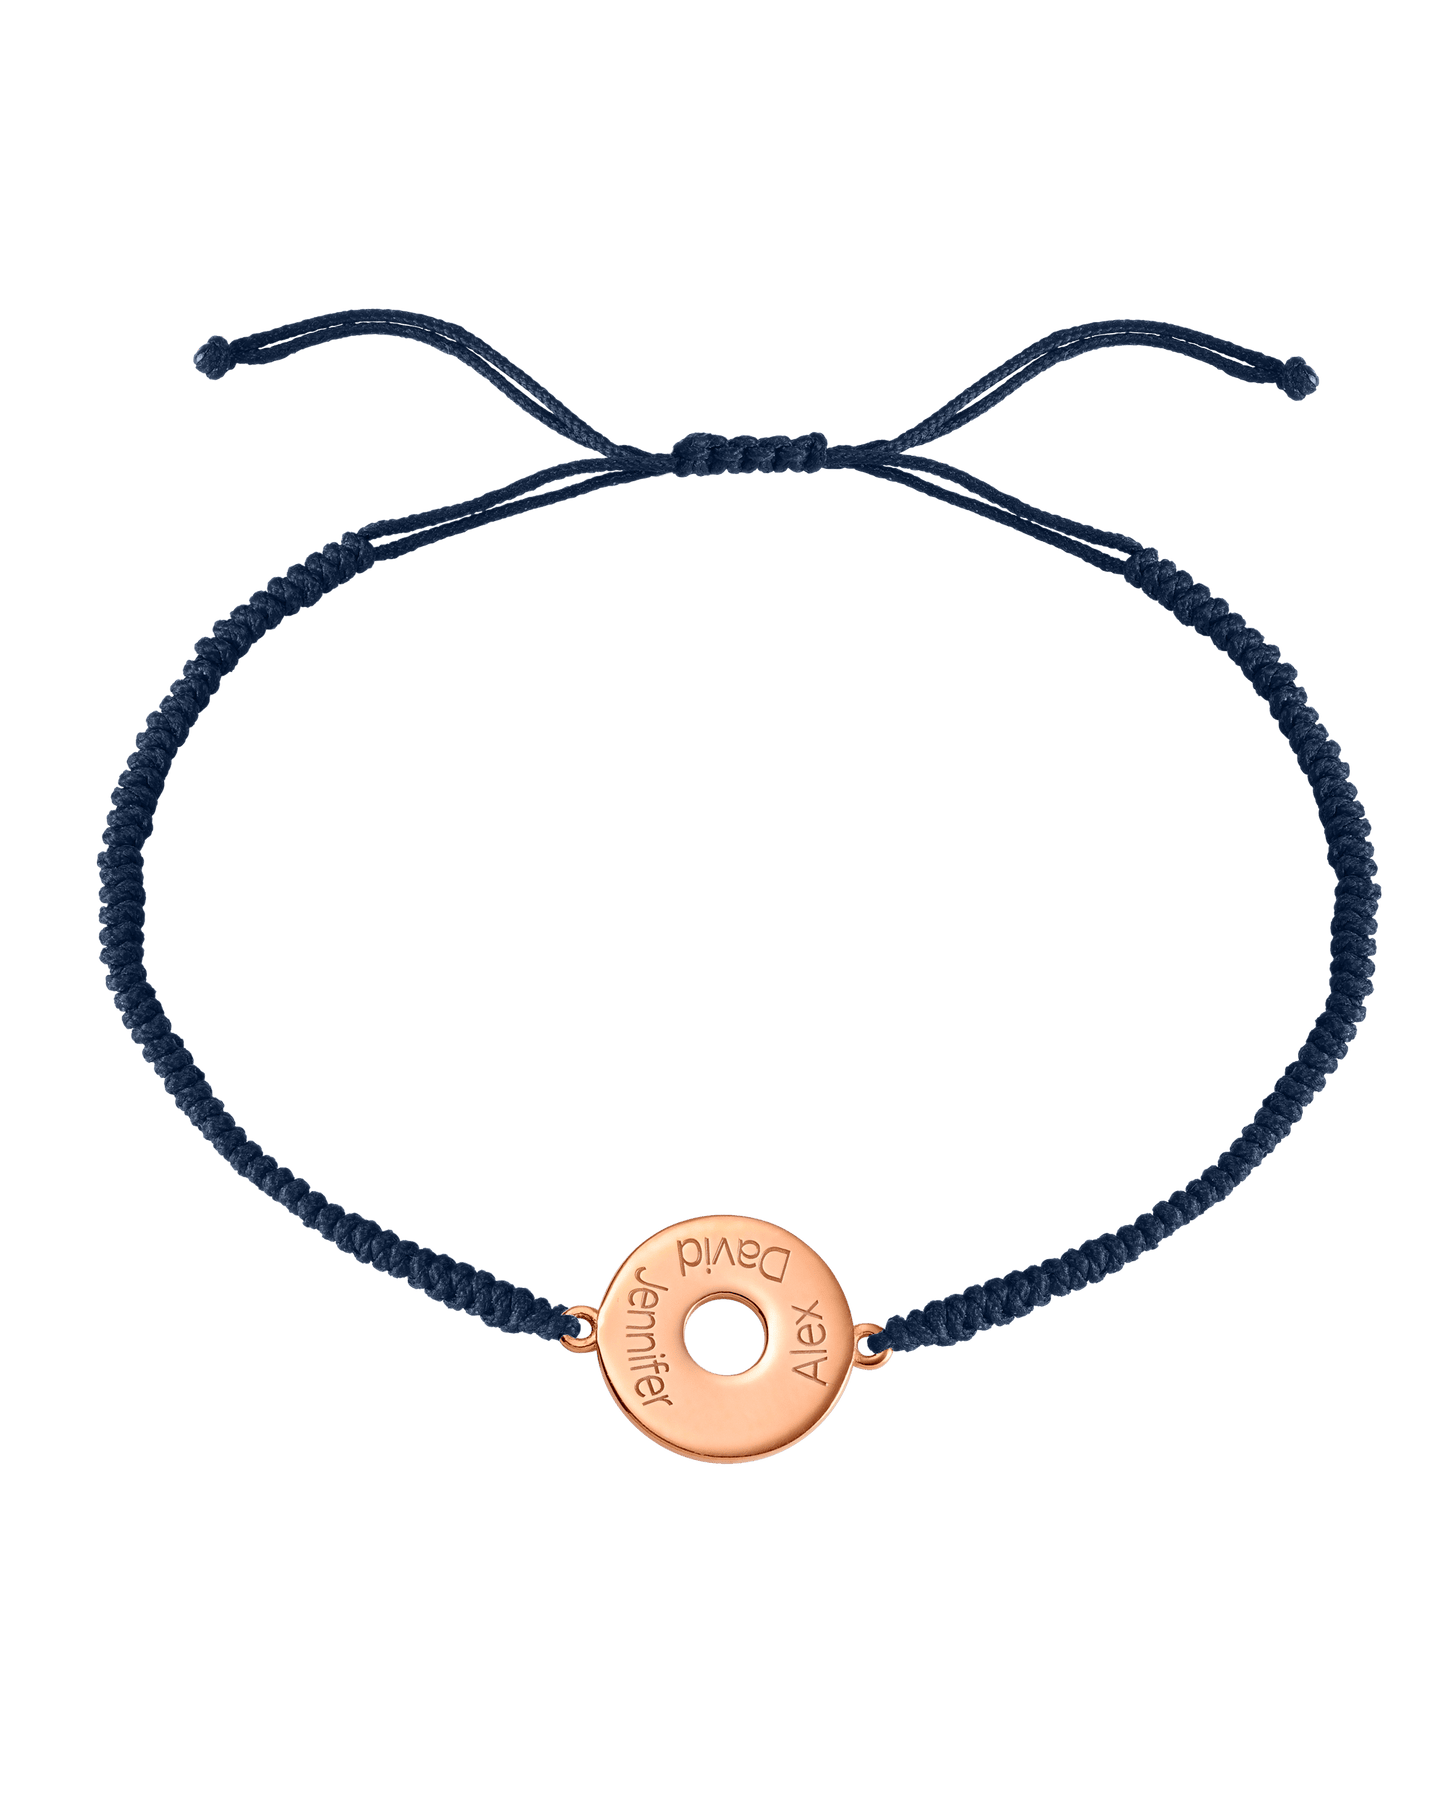 Donut Cord Bracelet - 18K Rose Vermeil Bracelets magal-dev Navy Blue 1 Names Adjustable from 4" to 9"